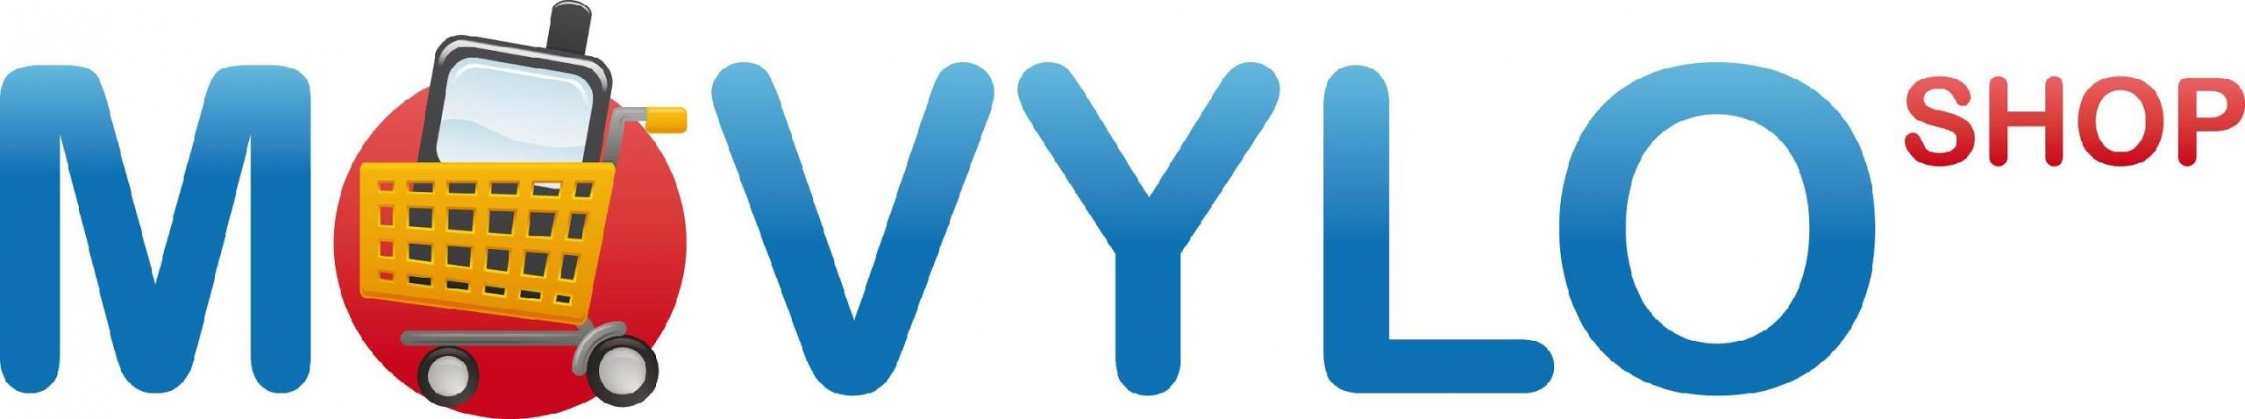 Movylo Logo